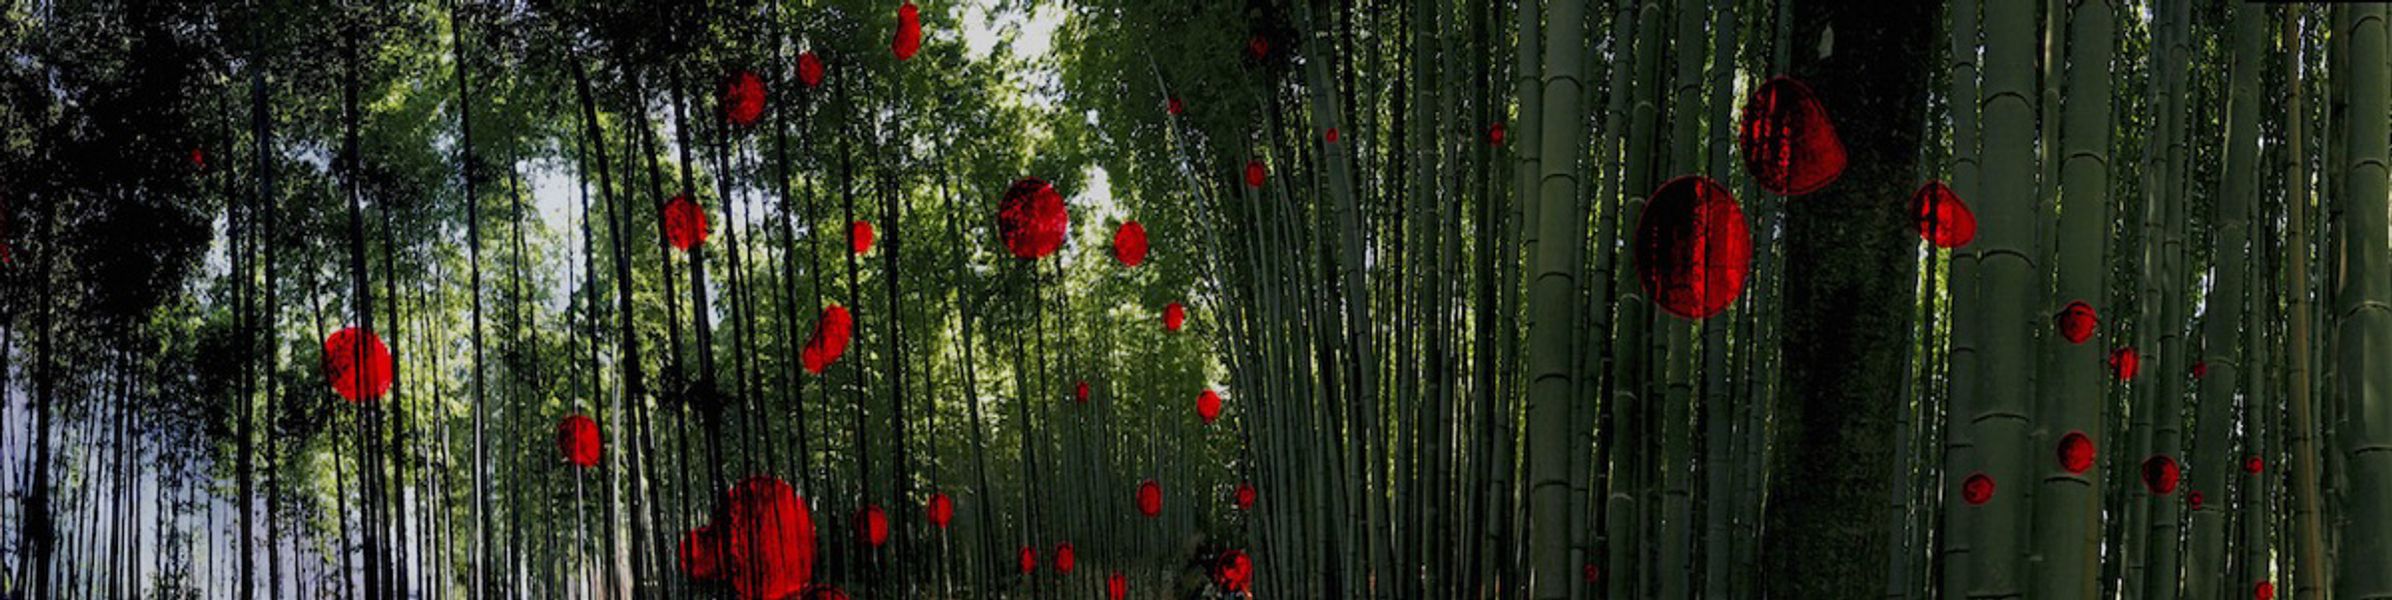 Delia Dickmann abstrakte Fotografie panorama Bambus mit roten Kreisen